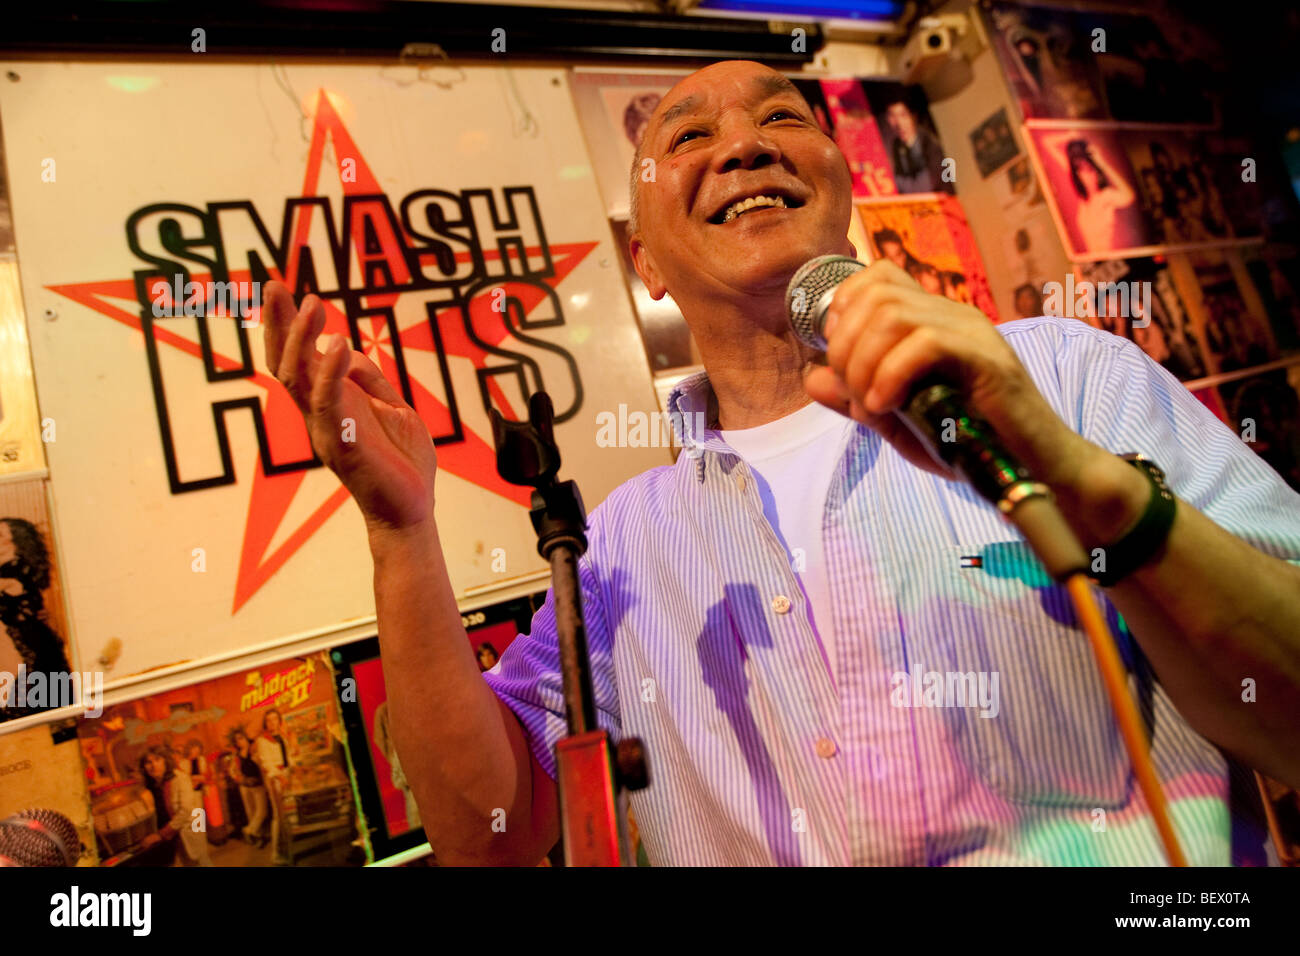 Hide Saito at work in his long established karaoke bar 'Smash Hits', Tokyo, Japan. Stock Photo